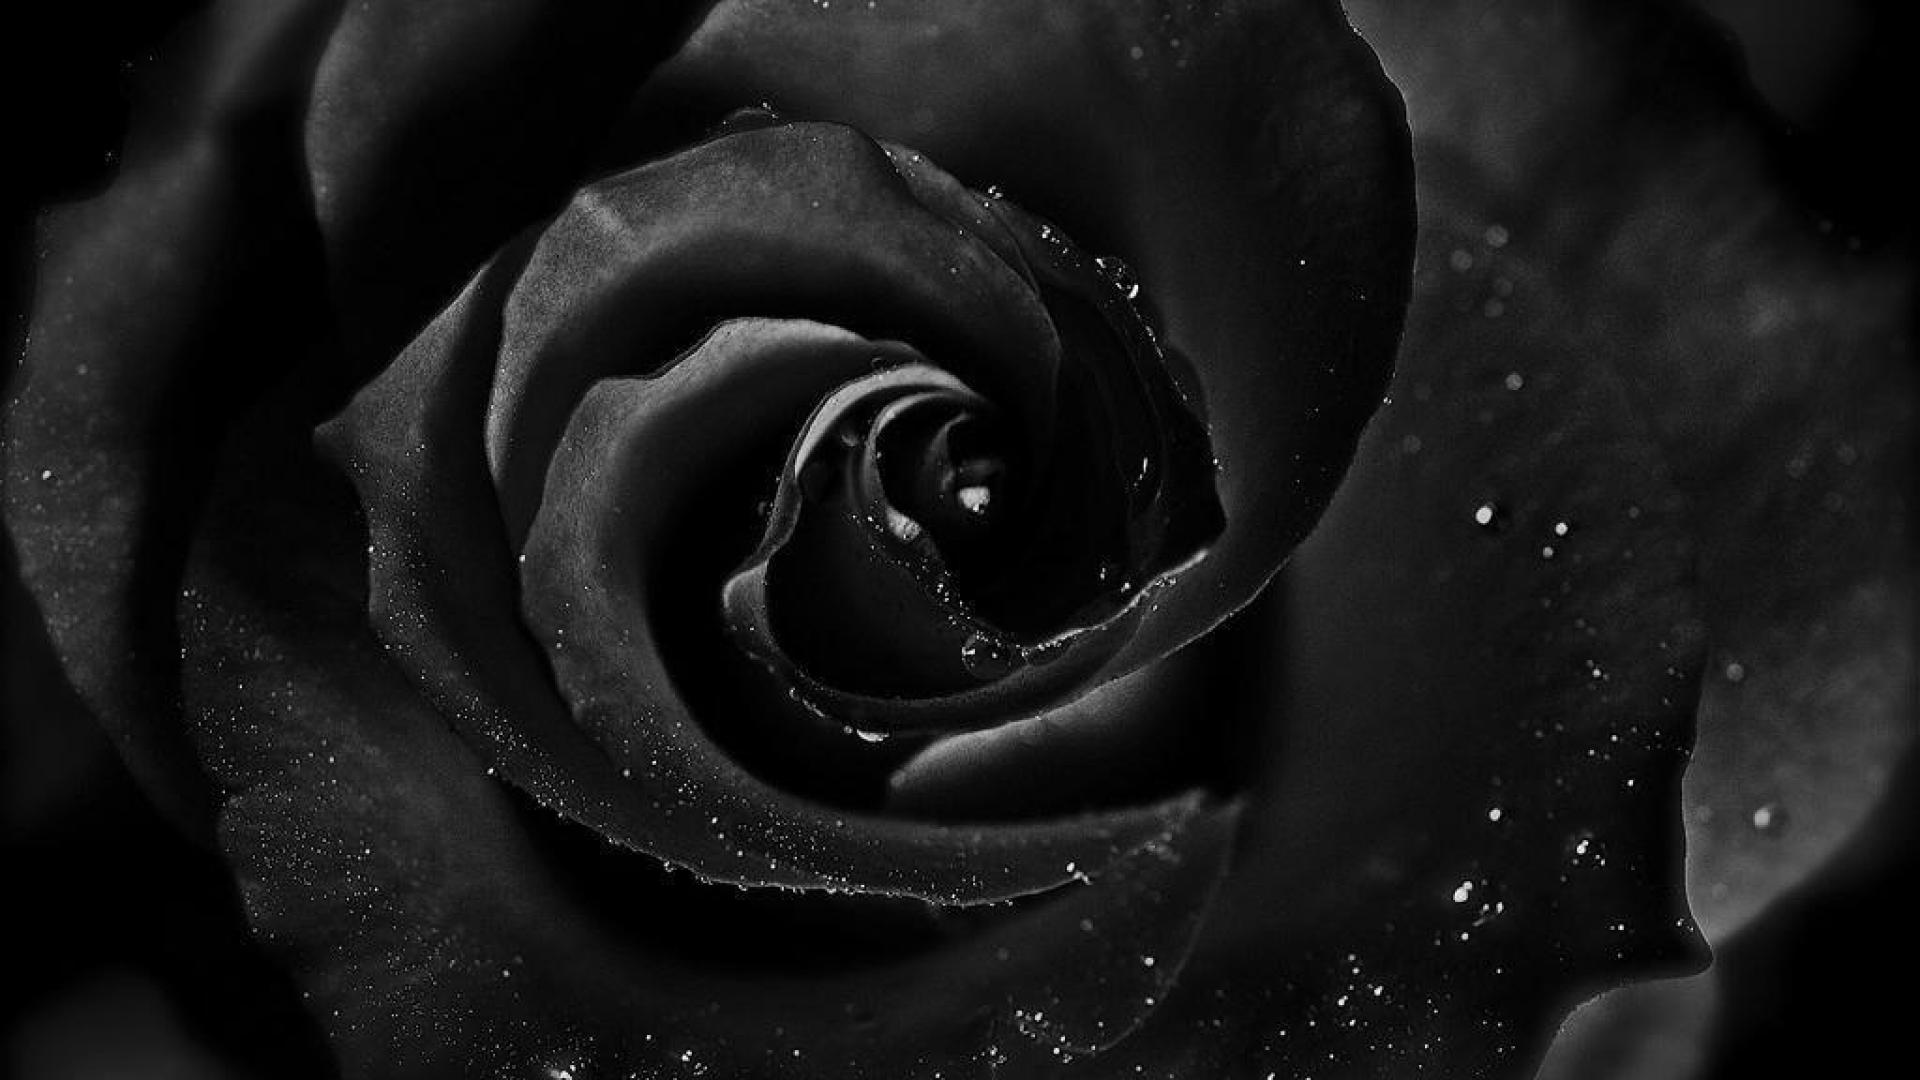 Скачать обои бесплатно Цветок, Роза, Черный, Черная Роза, Земля/природа, Капля Воды картинка на рабочий стол ПК